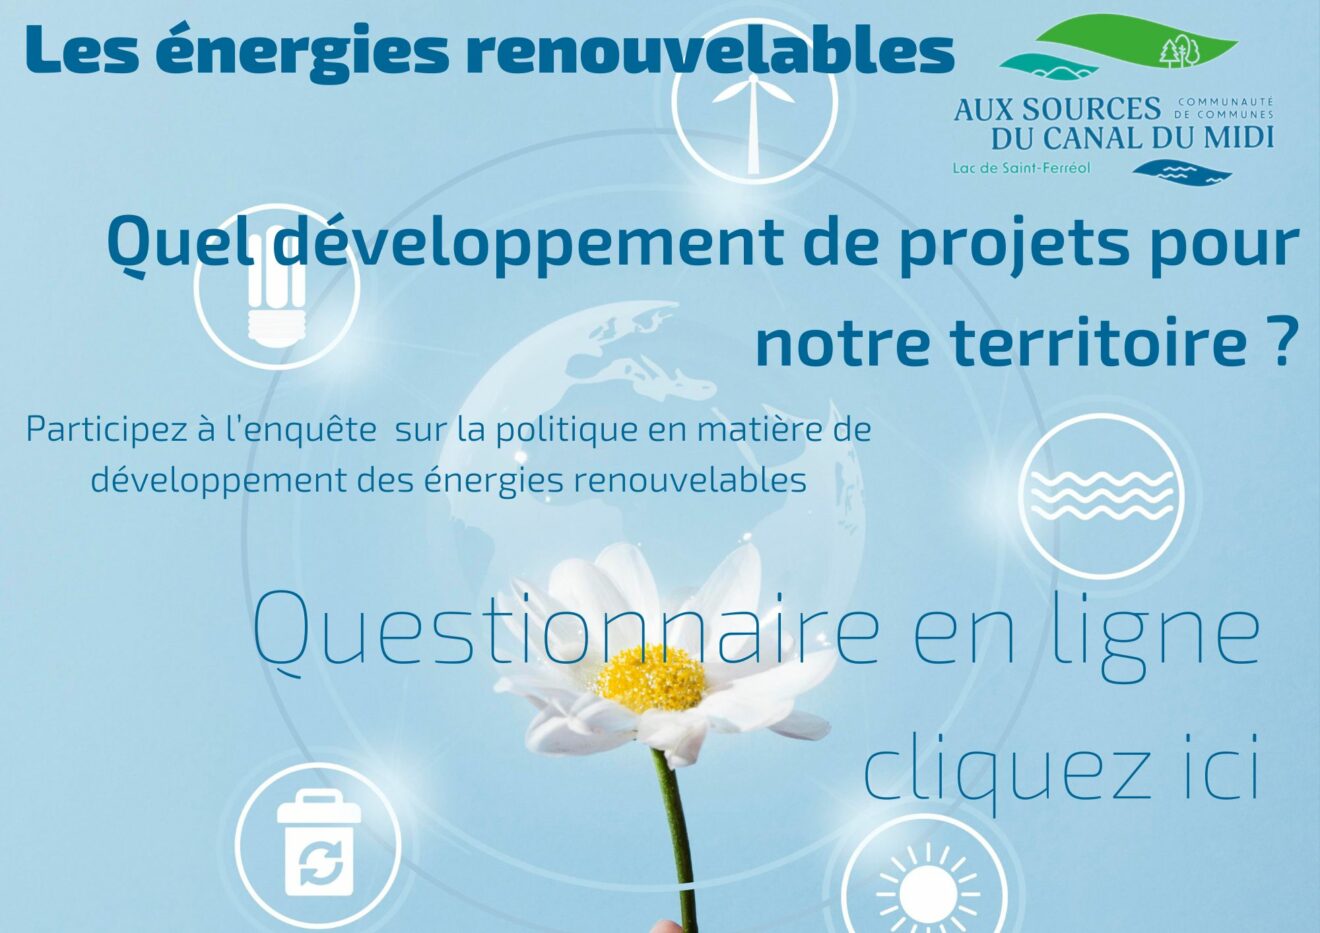 Les énergies renouvelables, quel développement de projets pour notre territoire ?